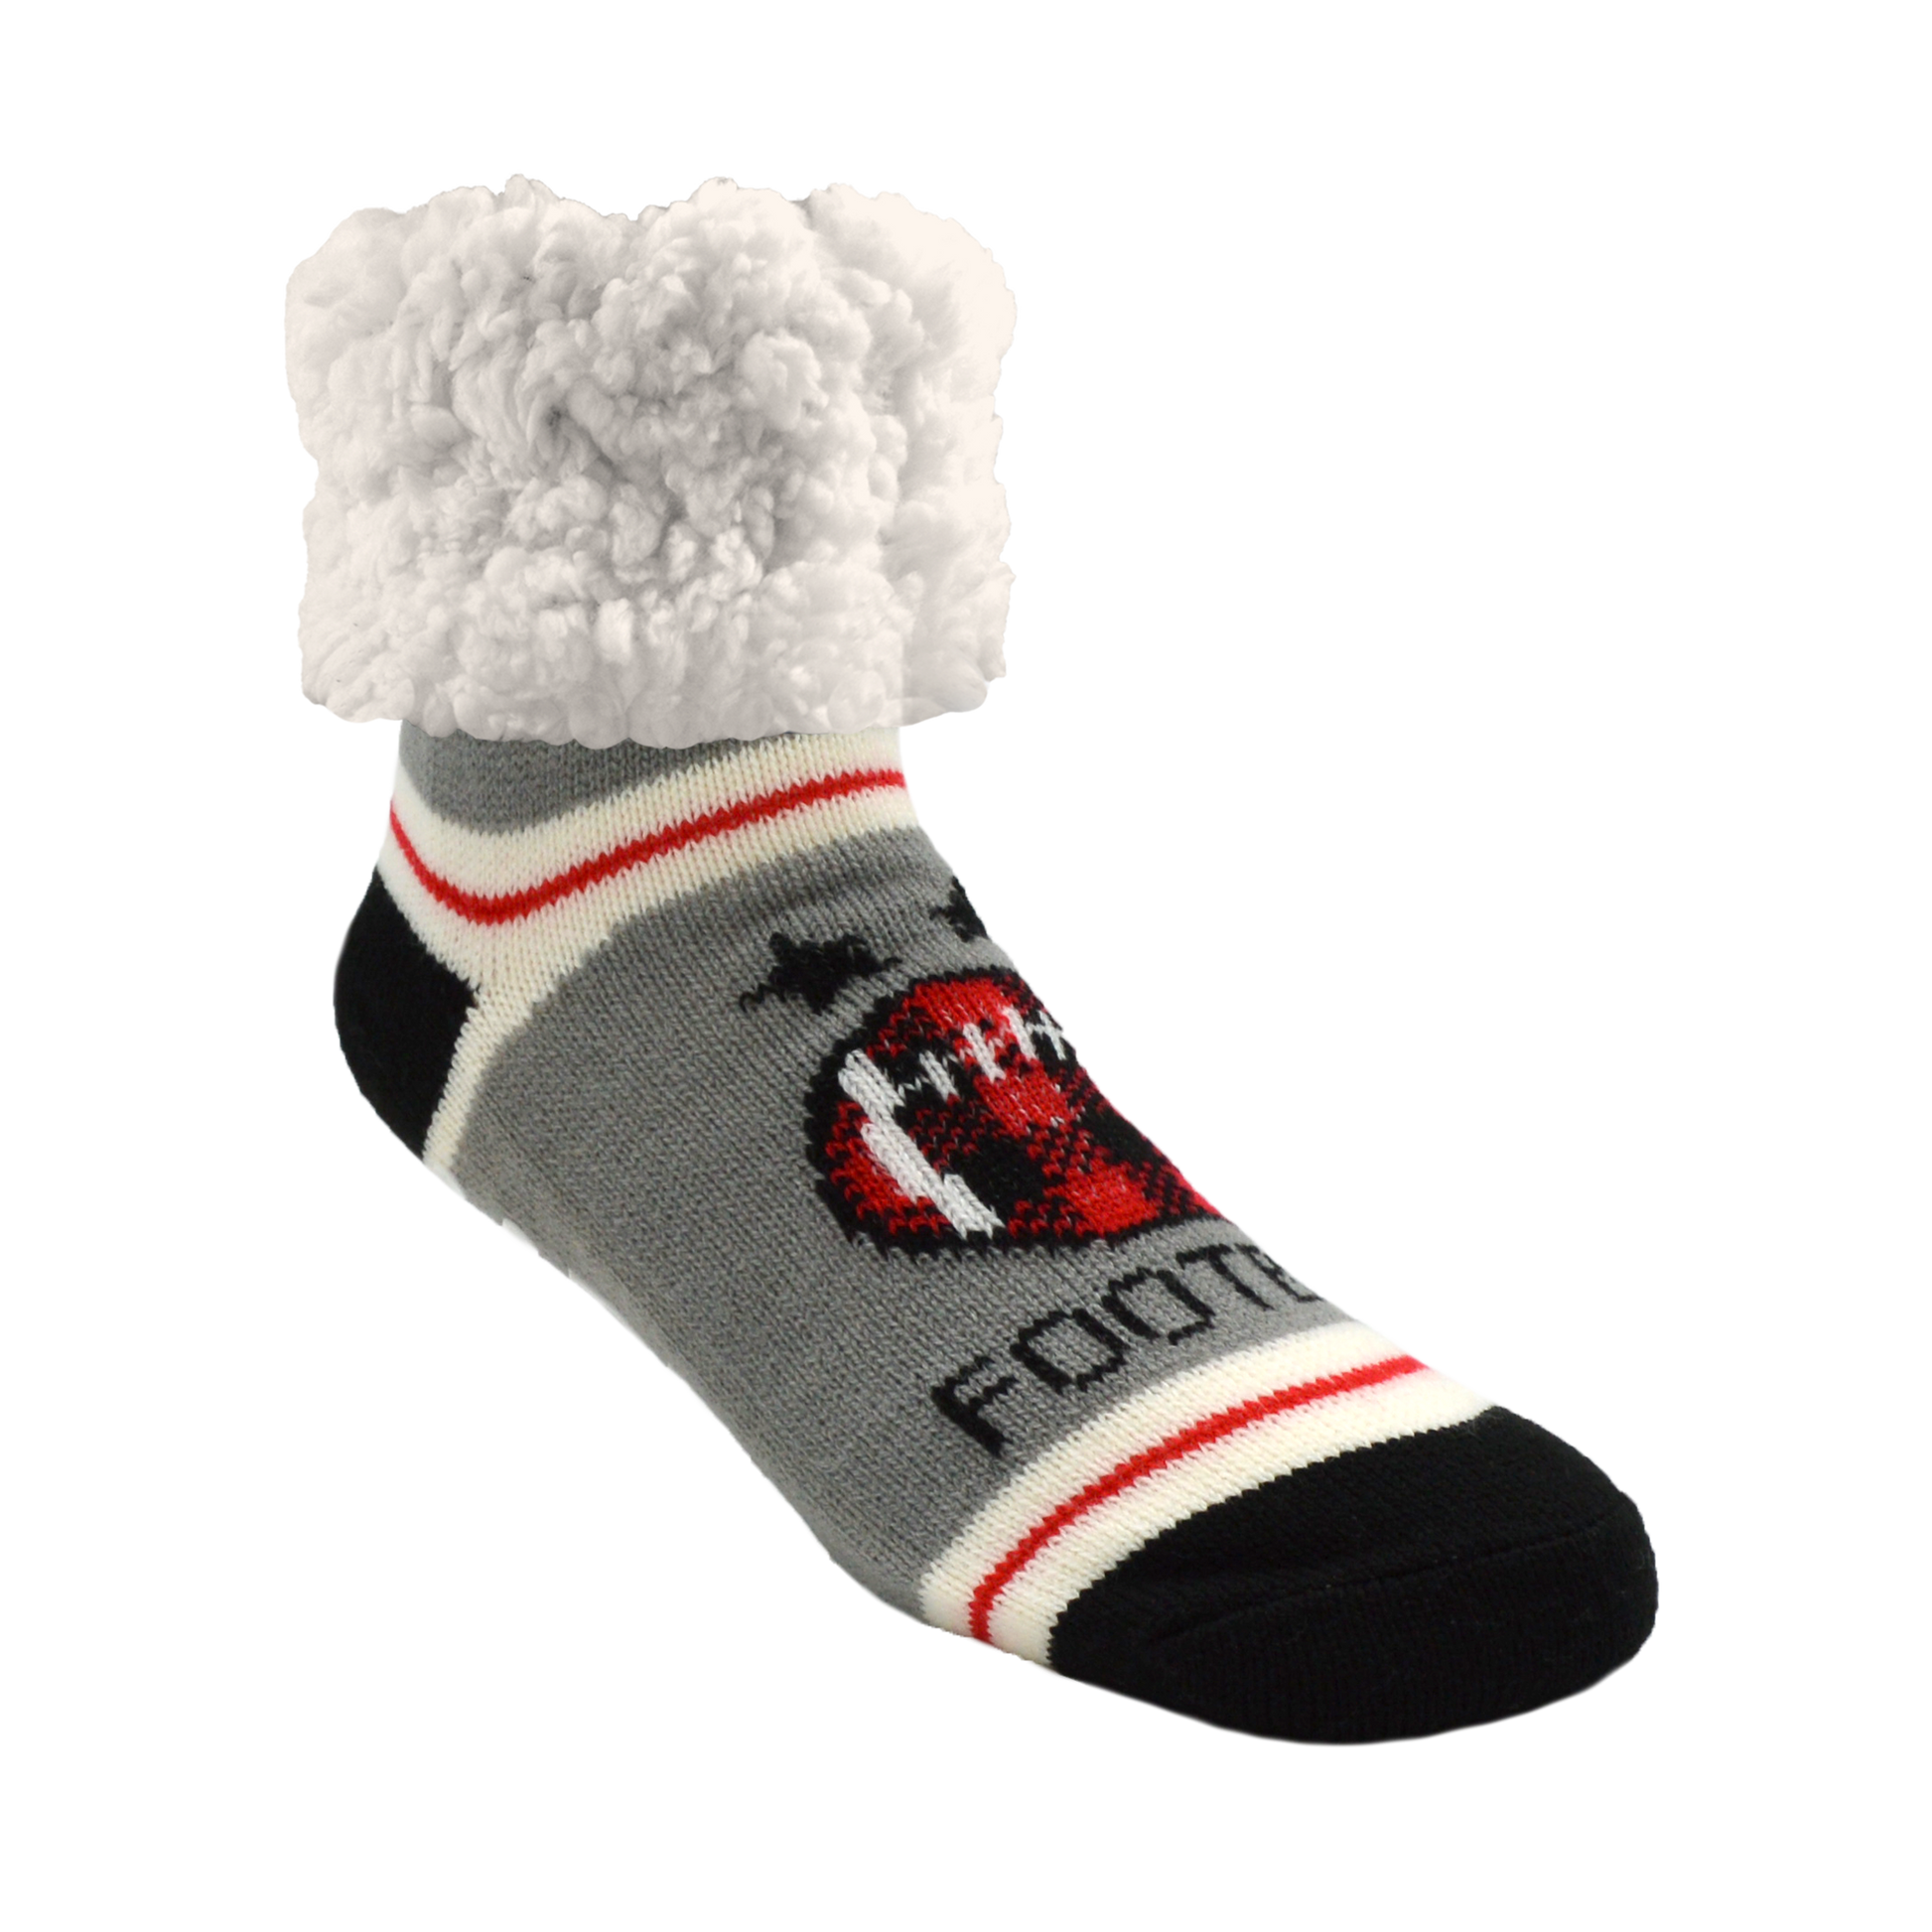 Slipper Socks Grippers Fuzzy Socks Women Non Slip Christmas Socks Athletic  Winter Warm Socks